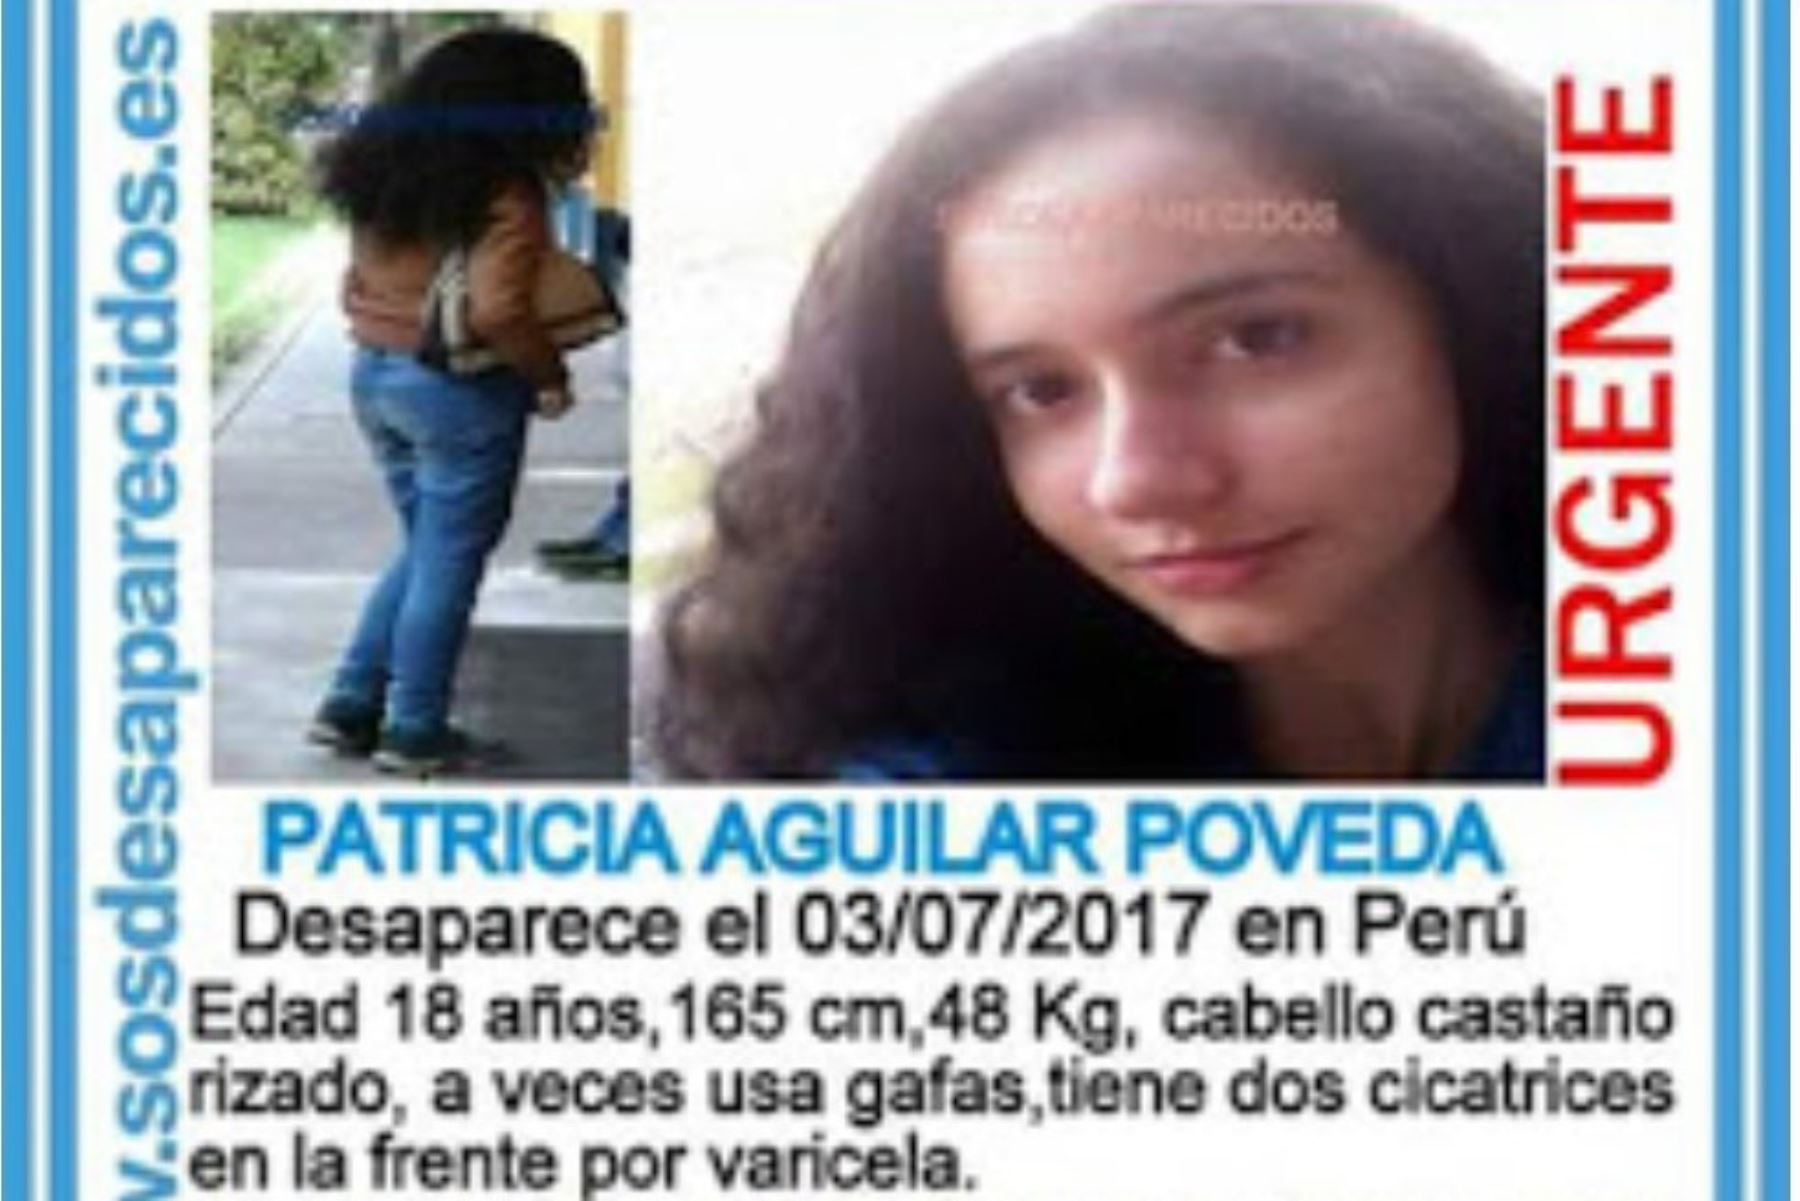 La ciudadana española Patricia Aguilar, de 19 años, llegó hoy a Lima en compañía de una bebé, hija suya de poco más de un mes, procedente de la selva peruana, donde fue ubicada en la víspera por la Policía Nacional durante una intervención contra la trata de personas.